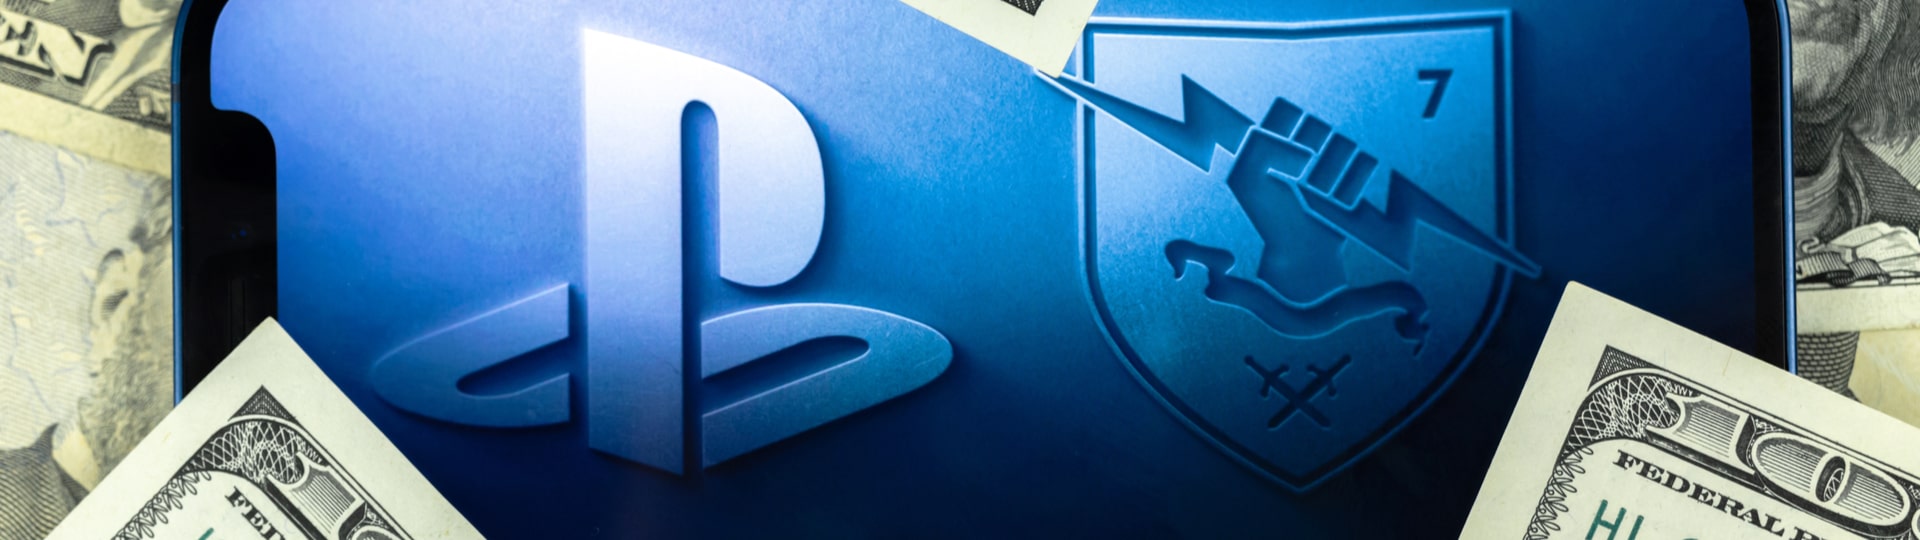 Japonská Sony kupuje amerického herního vývojáře Bungie